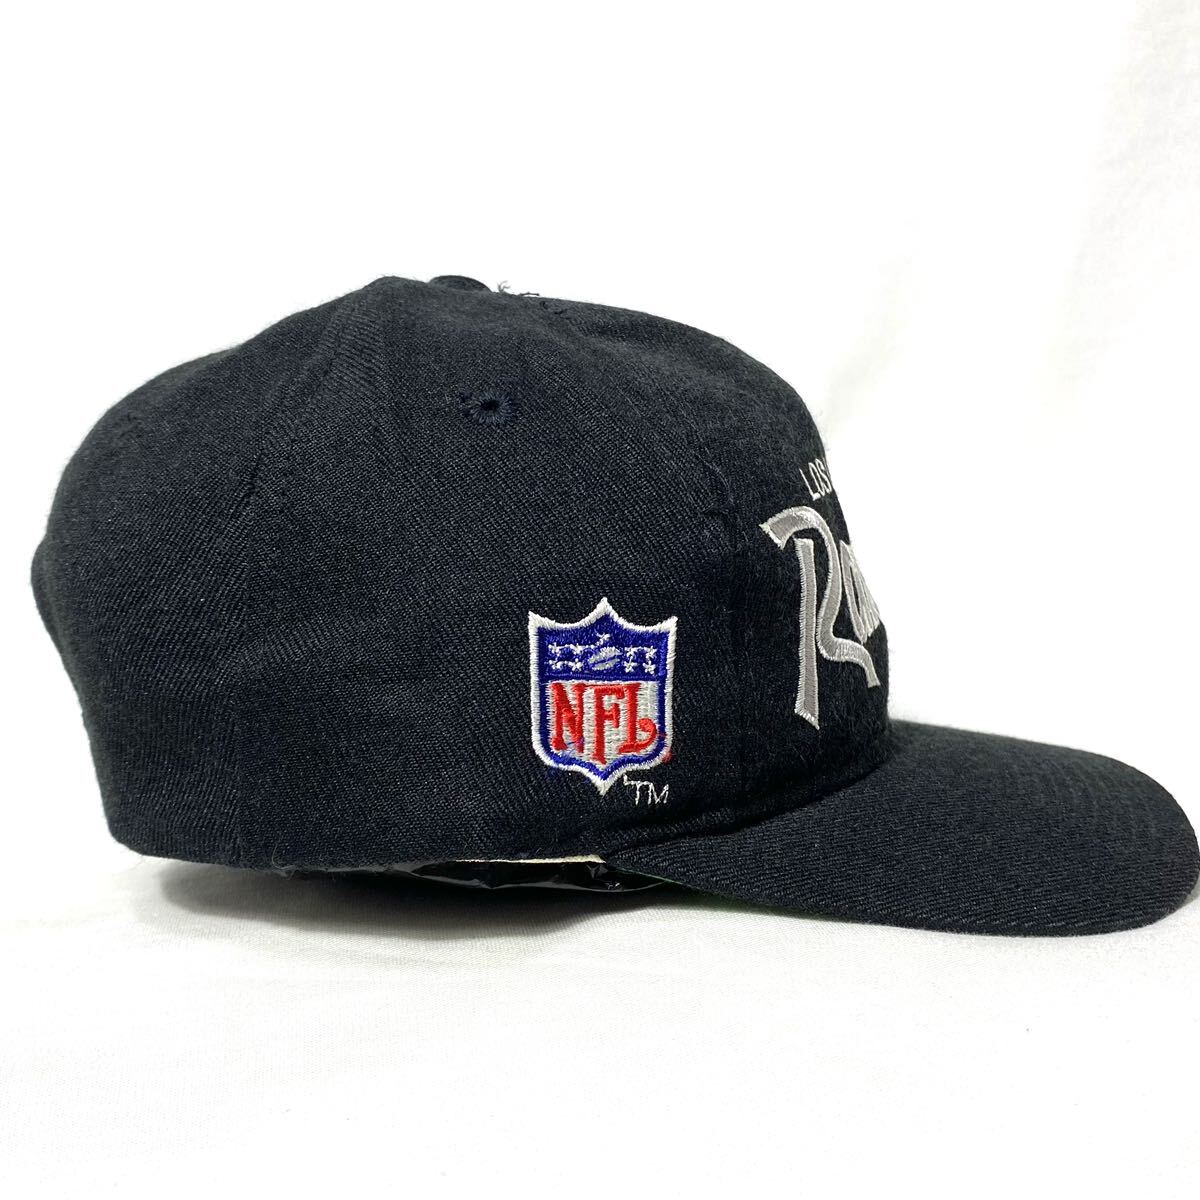 # unused dead stock Vintage Korea made NFL Los Angeles Raiders Raider s snap back cap N.W.A ice Cube #